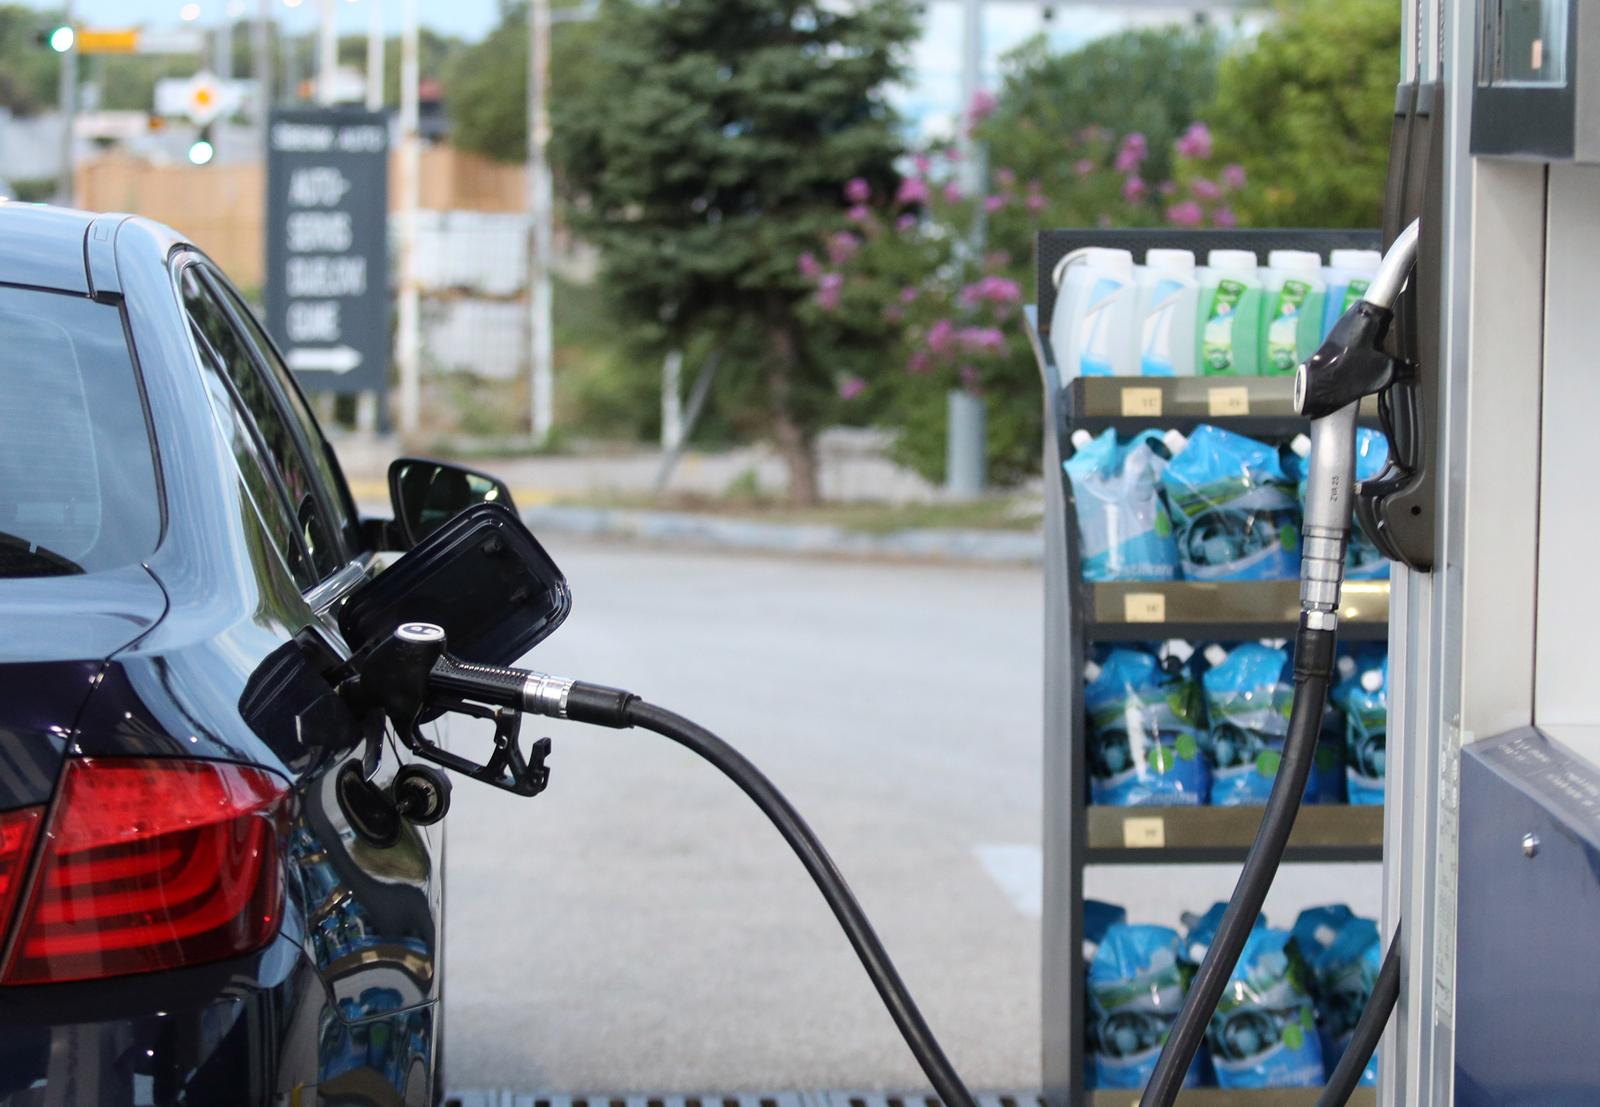 09.08.2022., Sibenik - Od ponoci nize cijene goriva na benzinskim postajama sirom Hrvatske. Photo: Dusko Jaramaz/PIXSELL